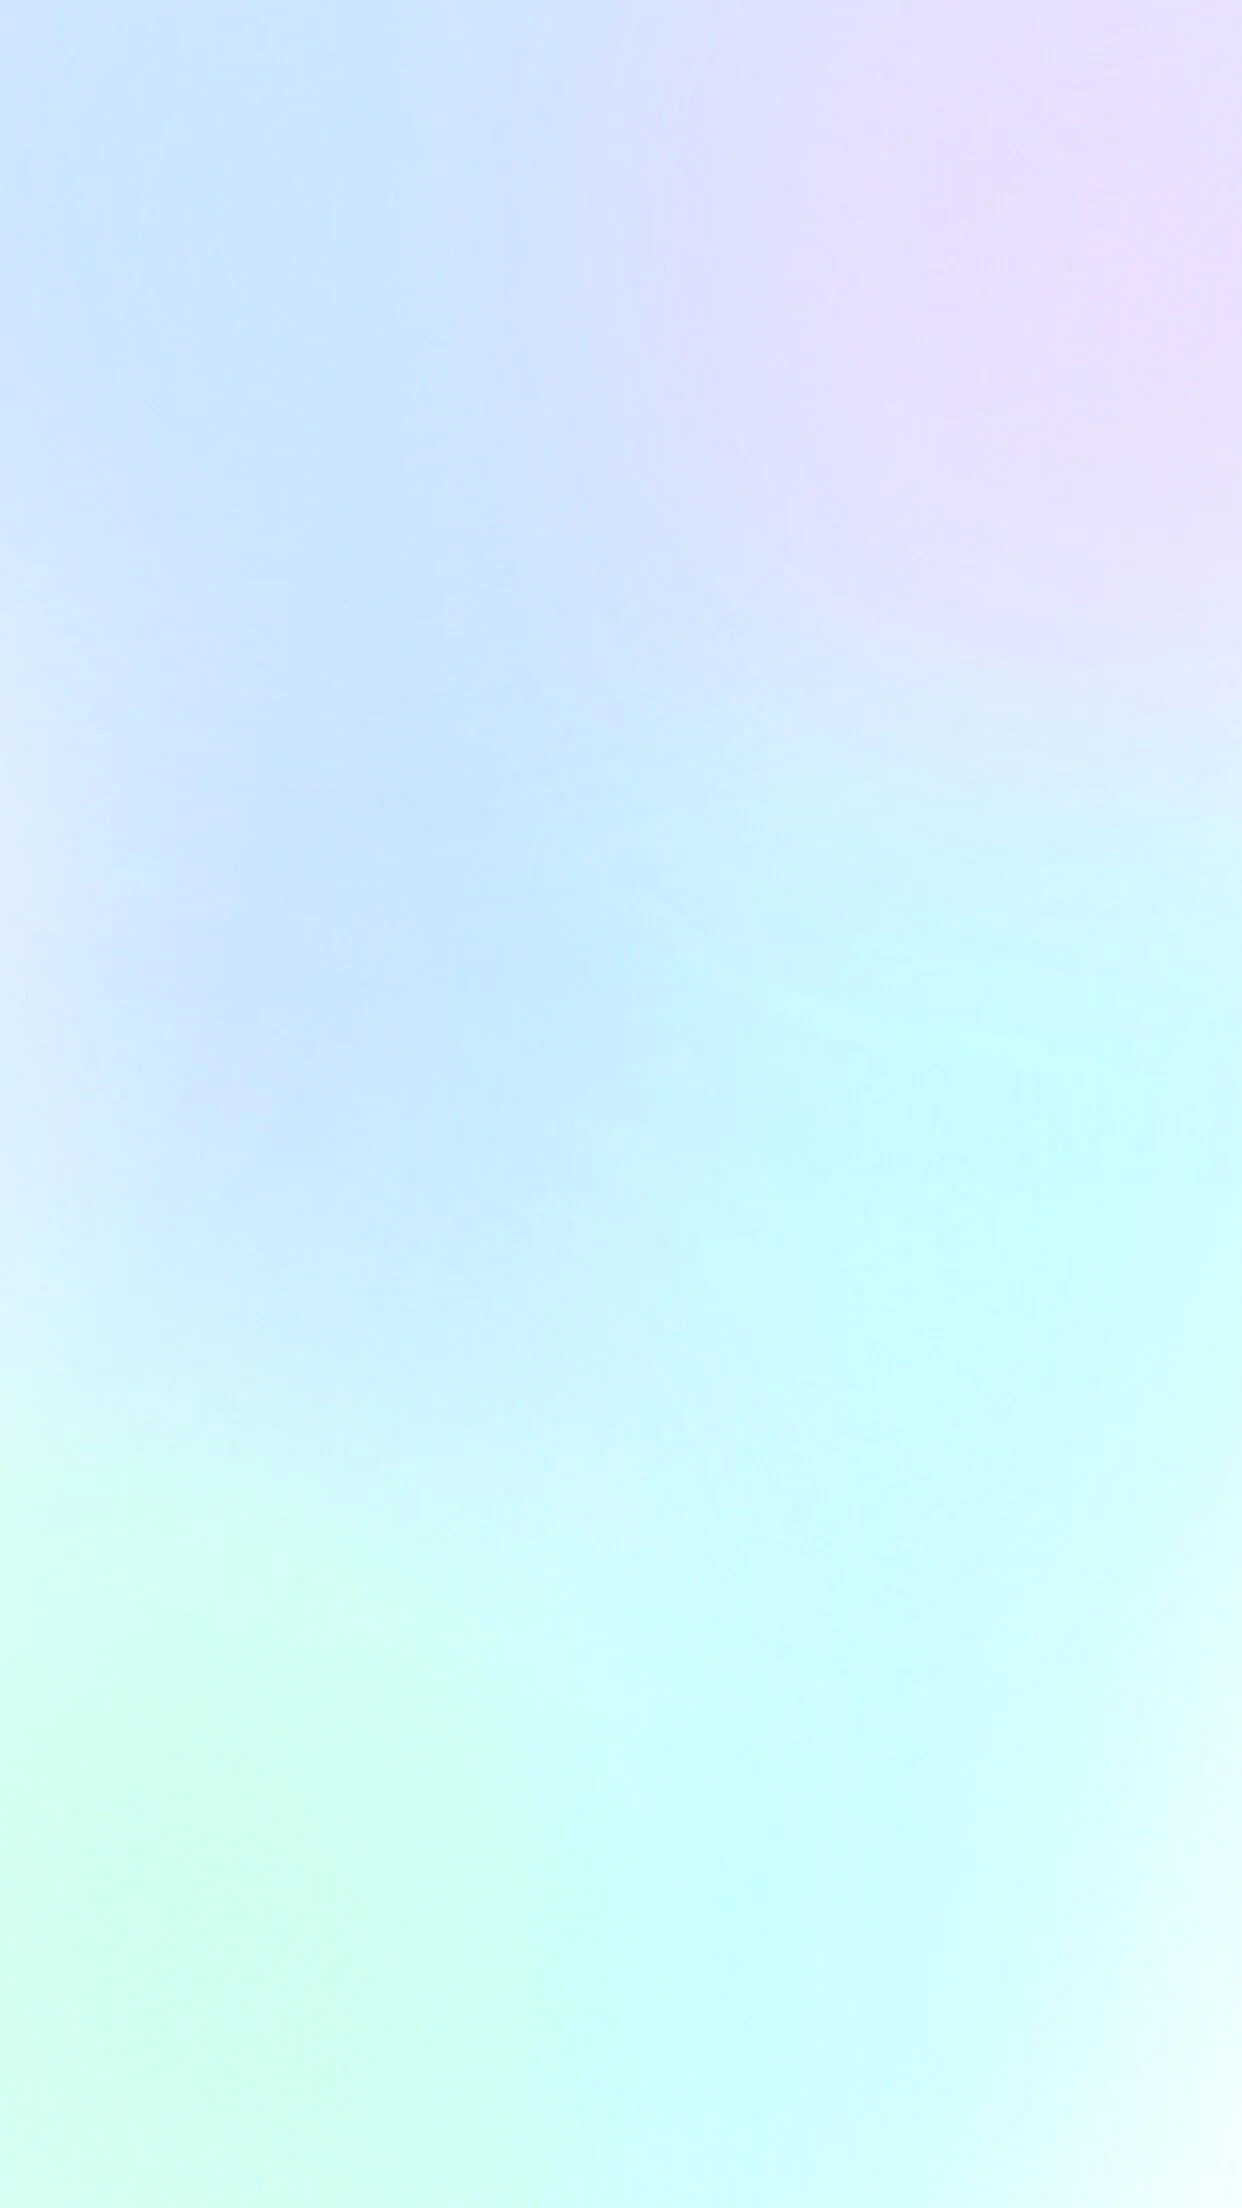 Pastel blue purple mint ombre (gradient) phone wallpaper